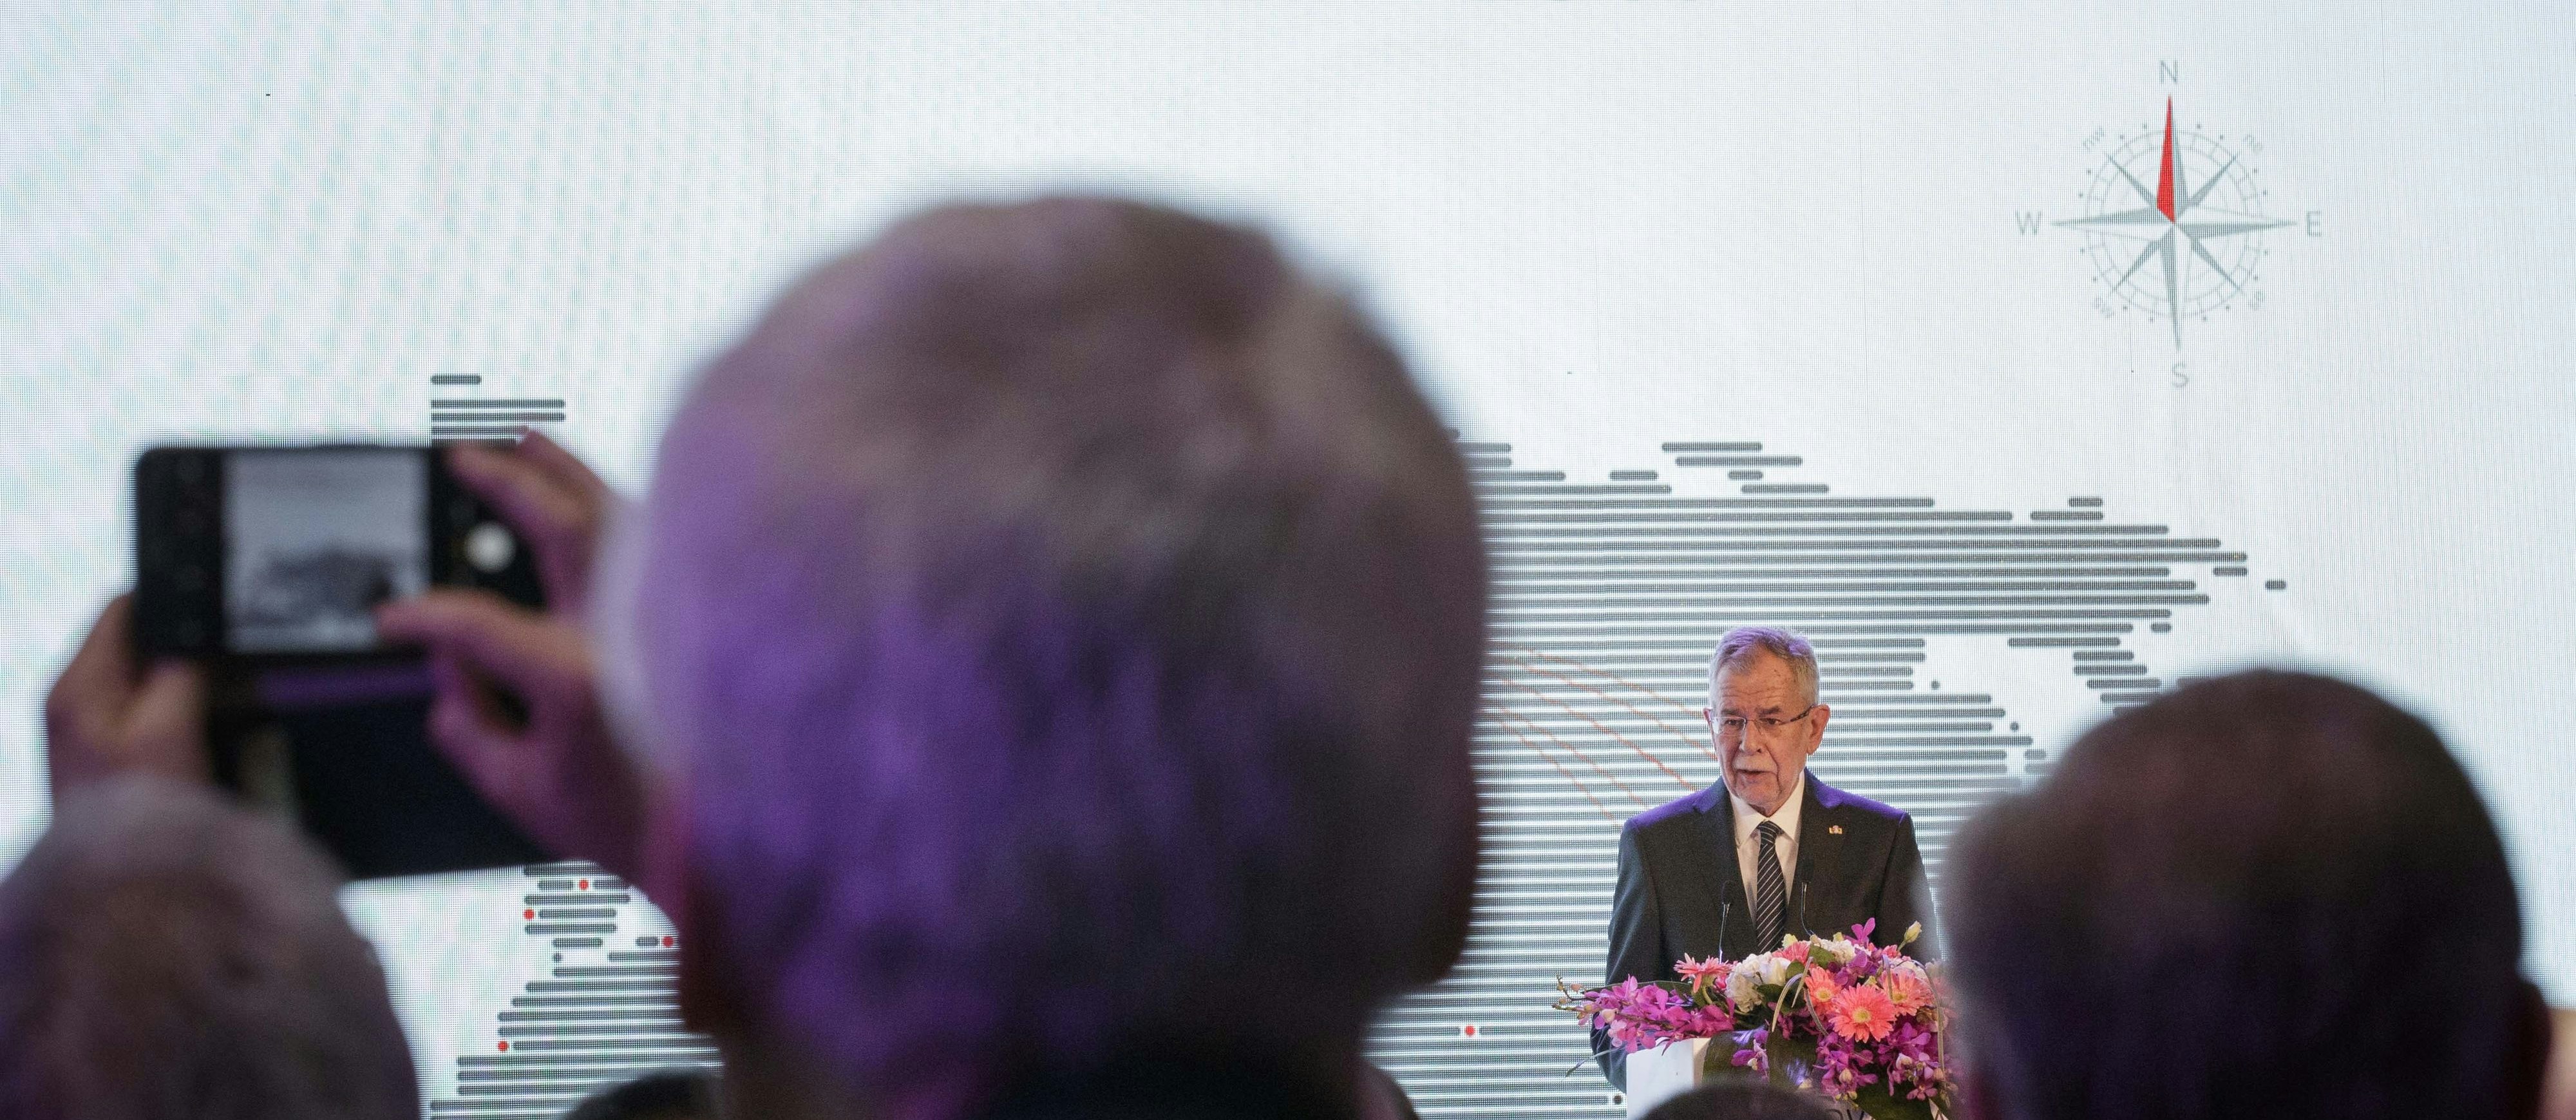 Bundespräsident Alexander Van der Bellen während der Eröffnung der Wirtschaftskonferenz "Austria Connect"  im Rahmen eines Staatsbesuchs 2018 in China